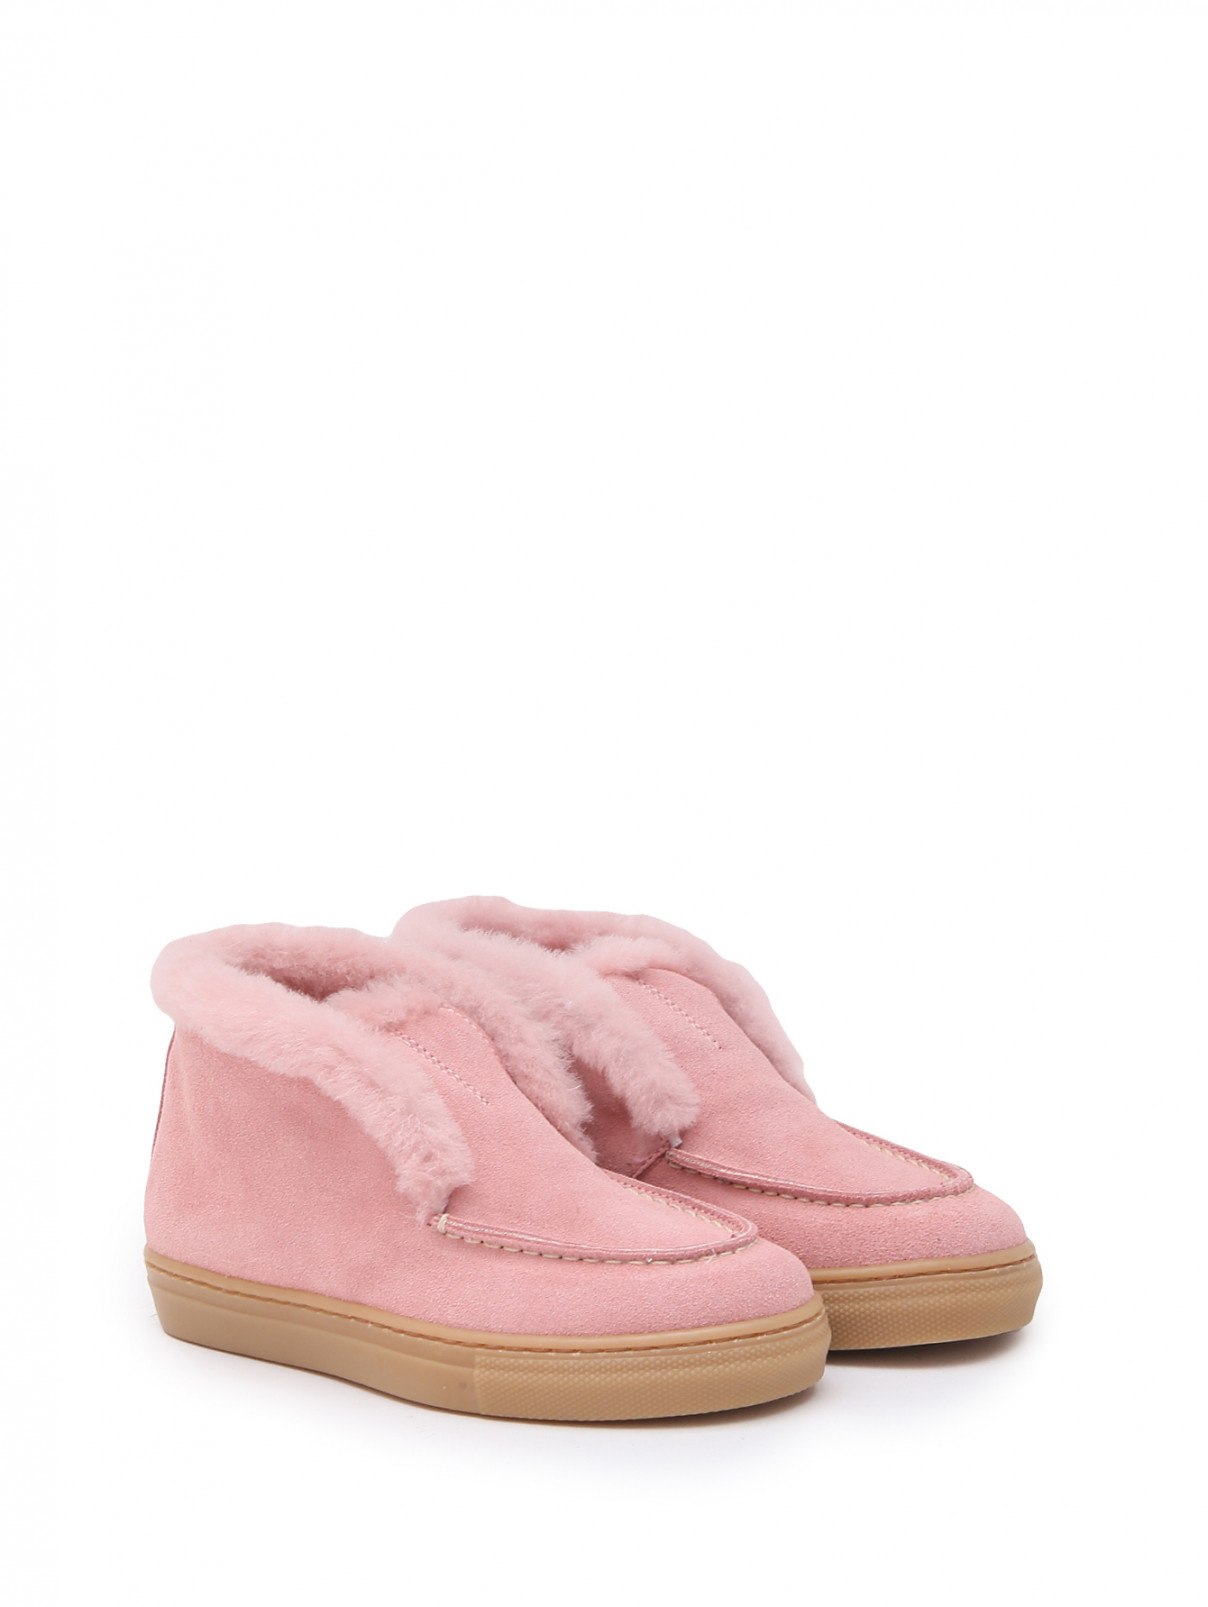 Замшевые утепленные ботинки Gallucci  –  Общий вид  – Цвет:  Розовый